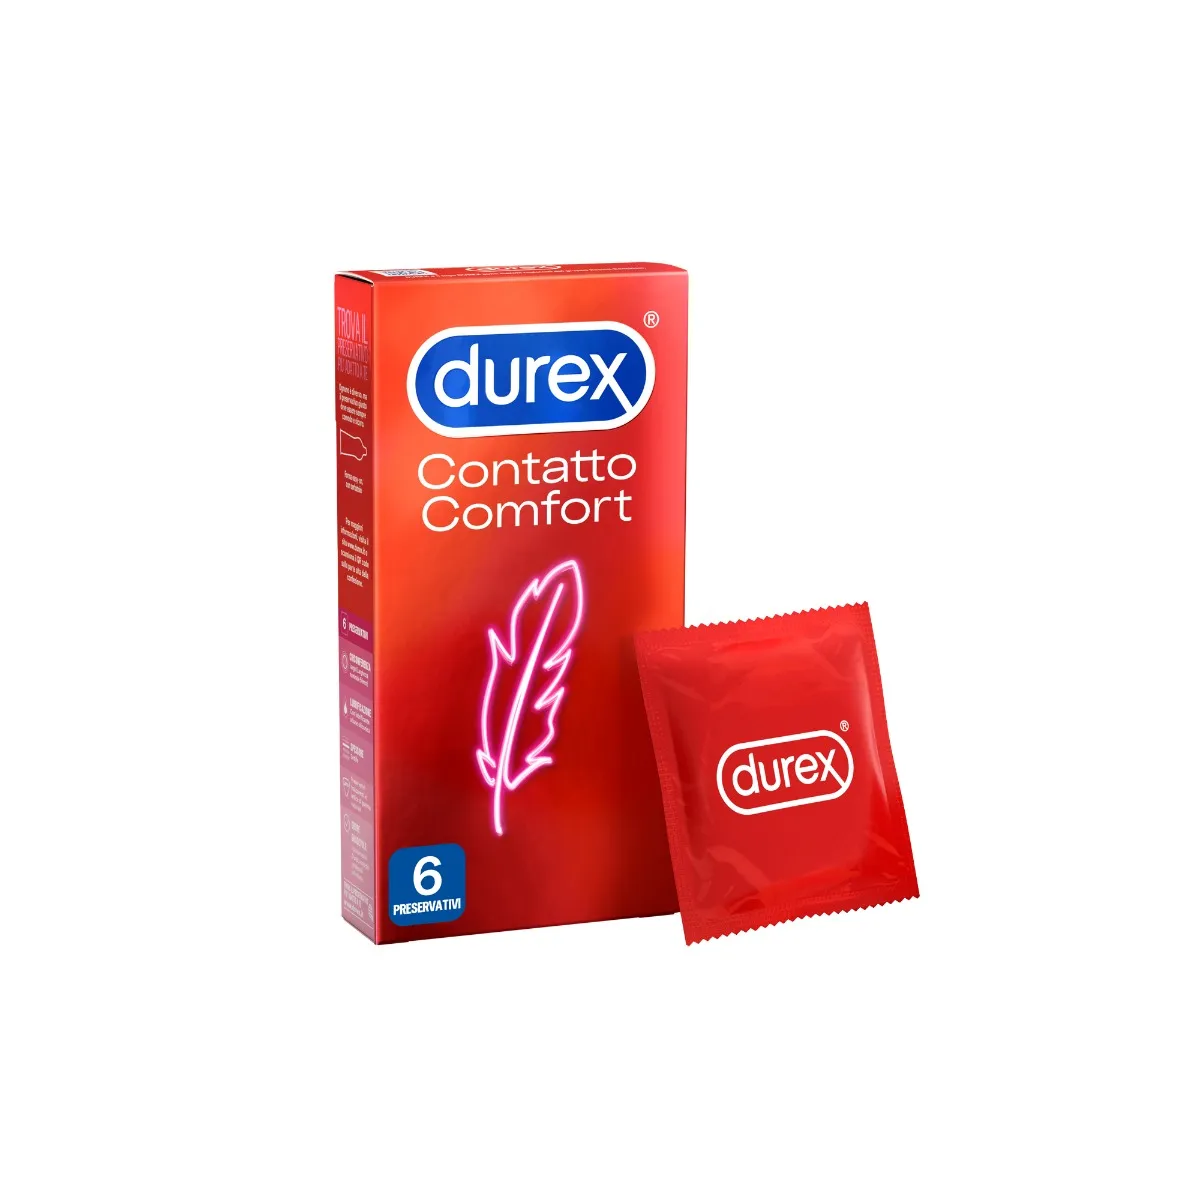 Durex Contatto Comfort Profilattici Sottili 6 Pezzi Elevata Lubrificazione